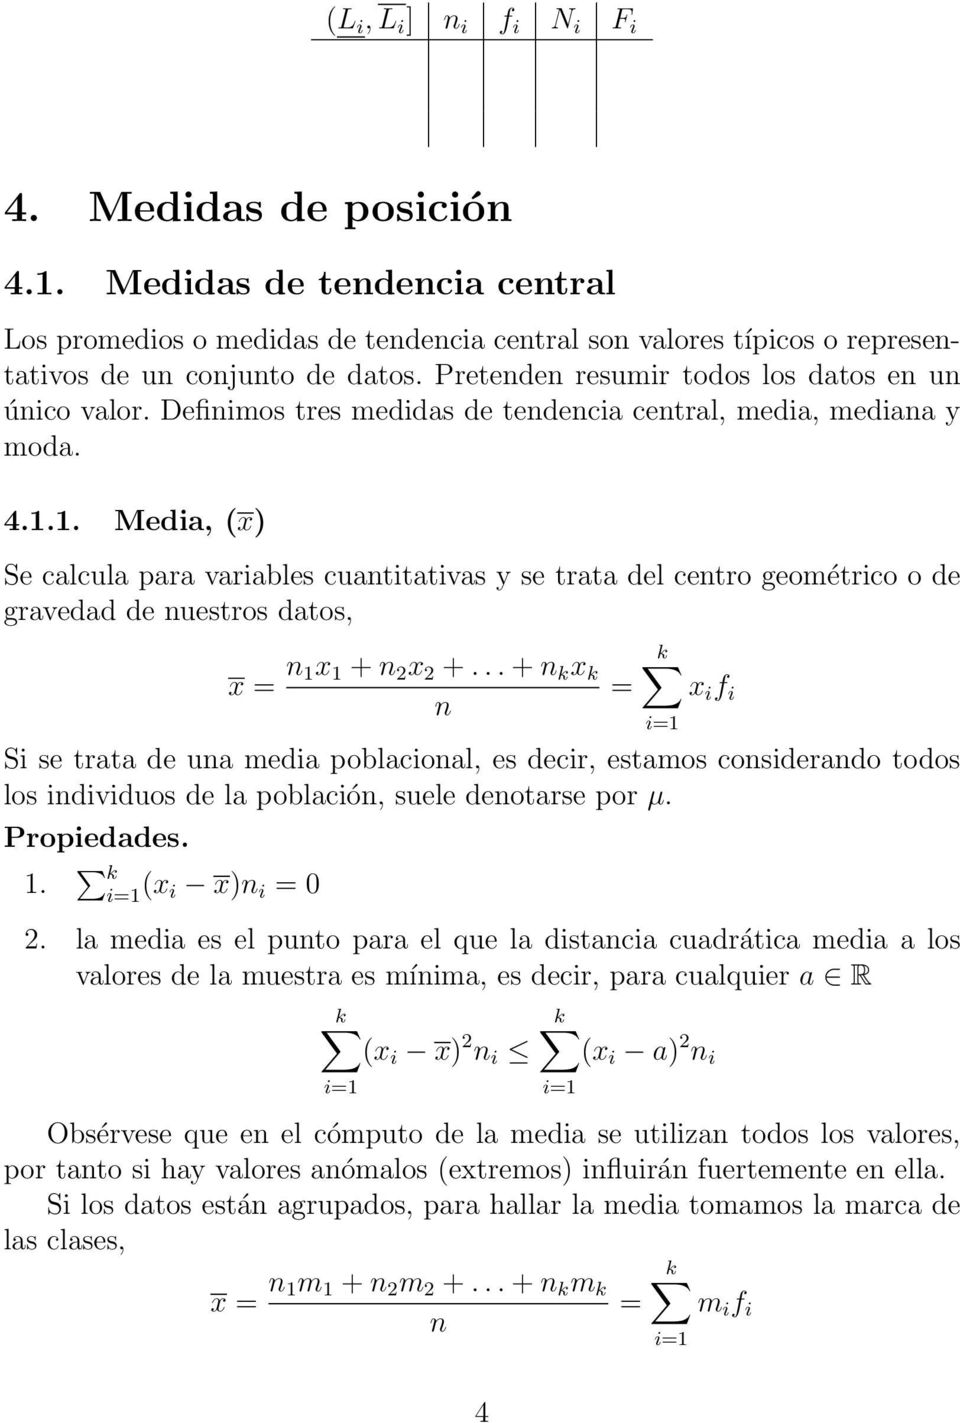 1. Media, (x) Se calcula para variables cuatitativas y se trata del cetro geométrico o de gravedad de uestros datos, x = 1x 1 + 2 x 2 +.